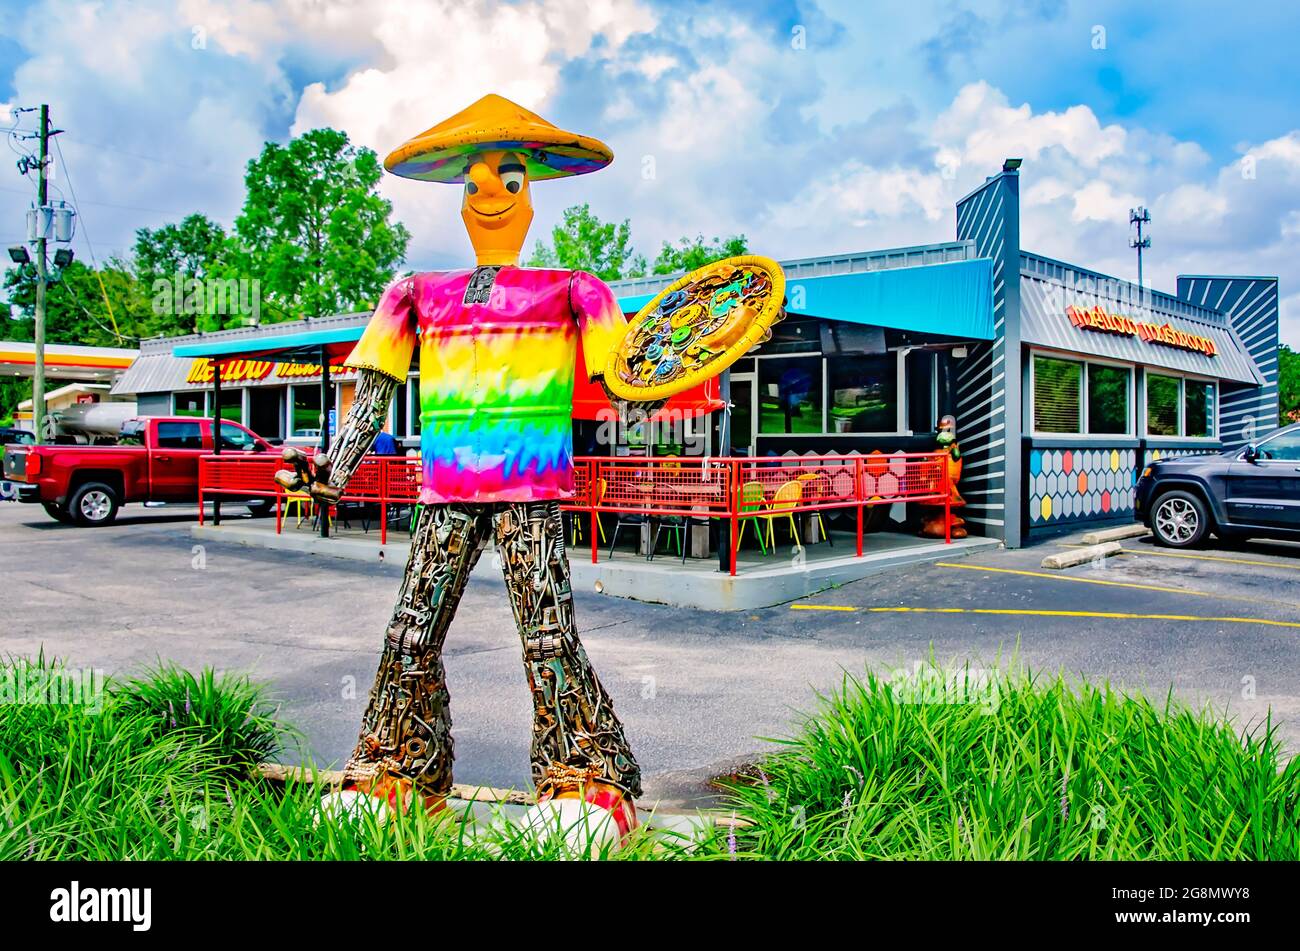 Un homme de ferraille géant tient une pizza devant Mellow Mushroom, le 20 juillet 2021, à Mobile, Alabama. Banque D'Images